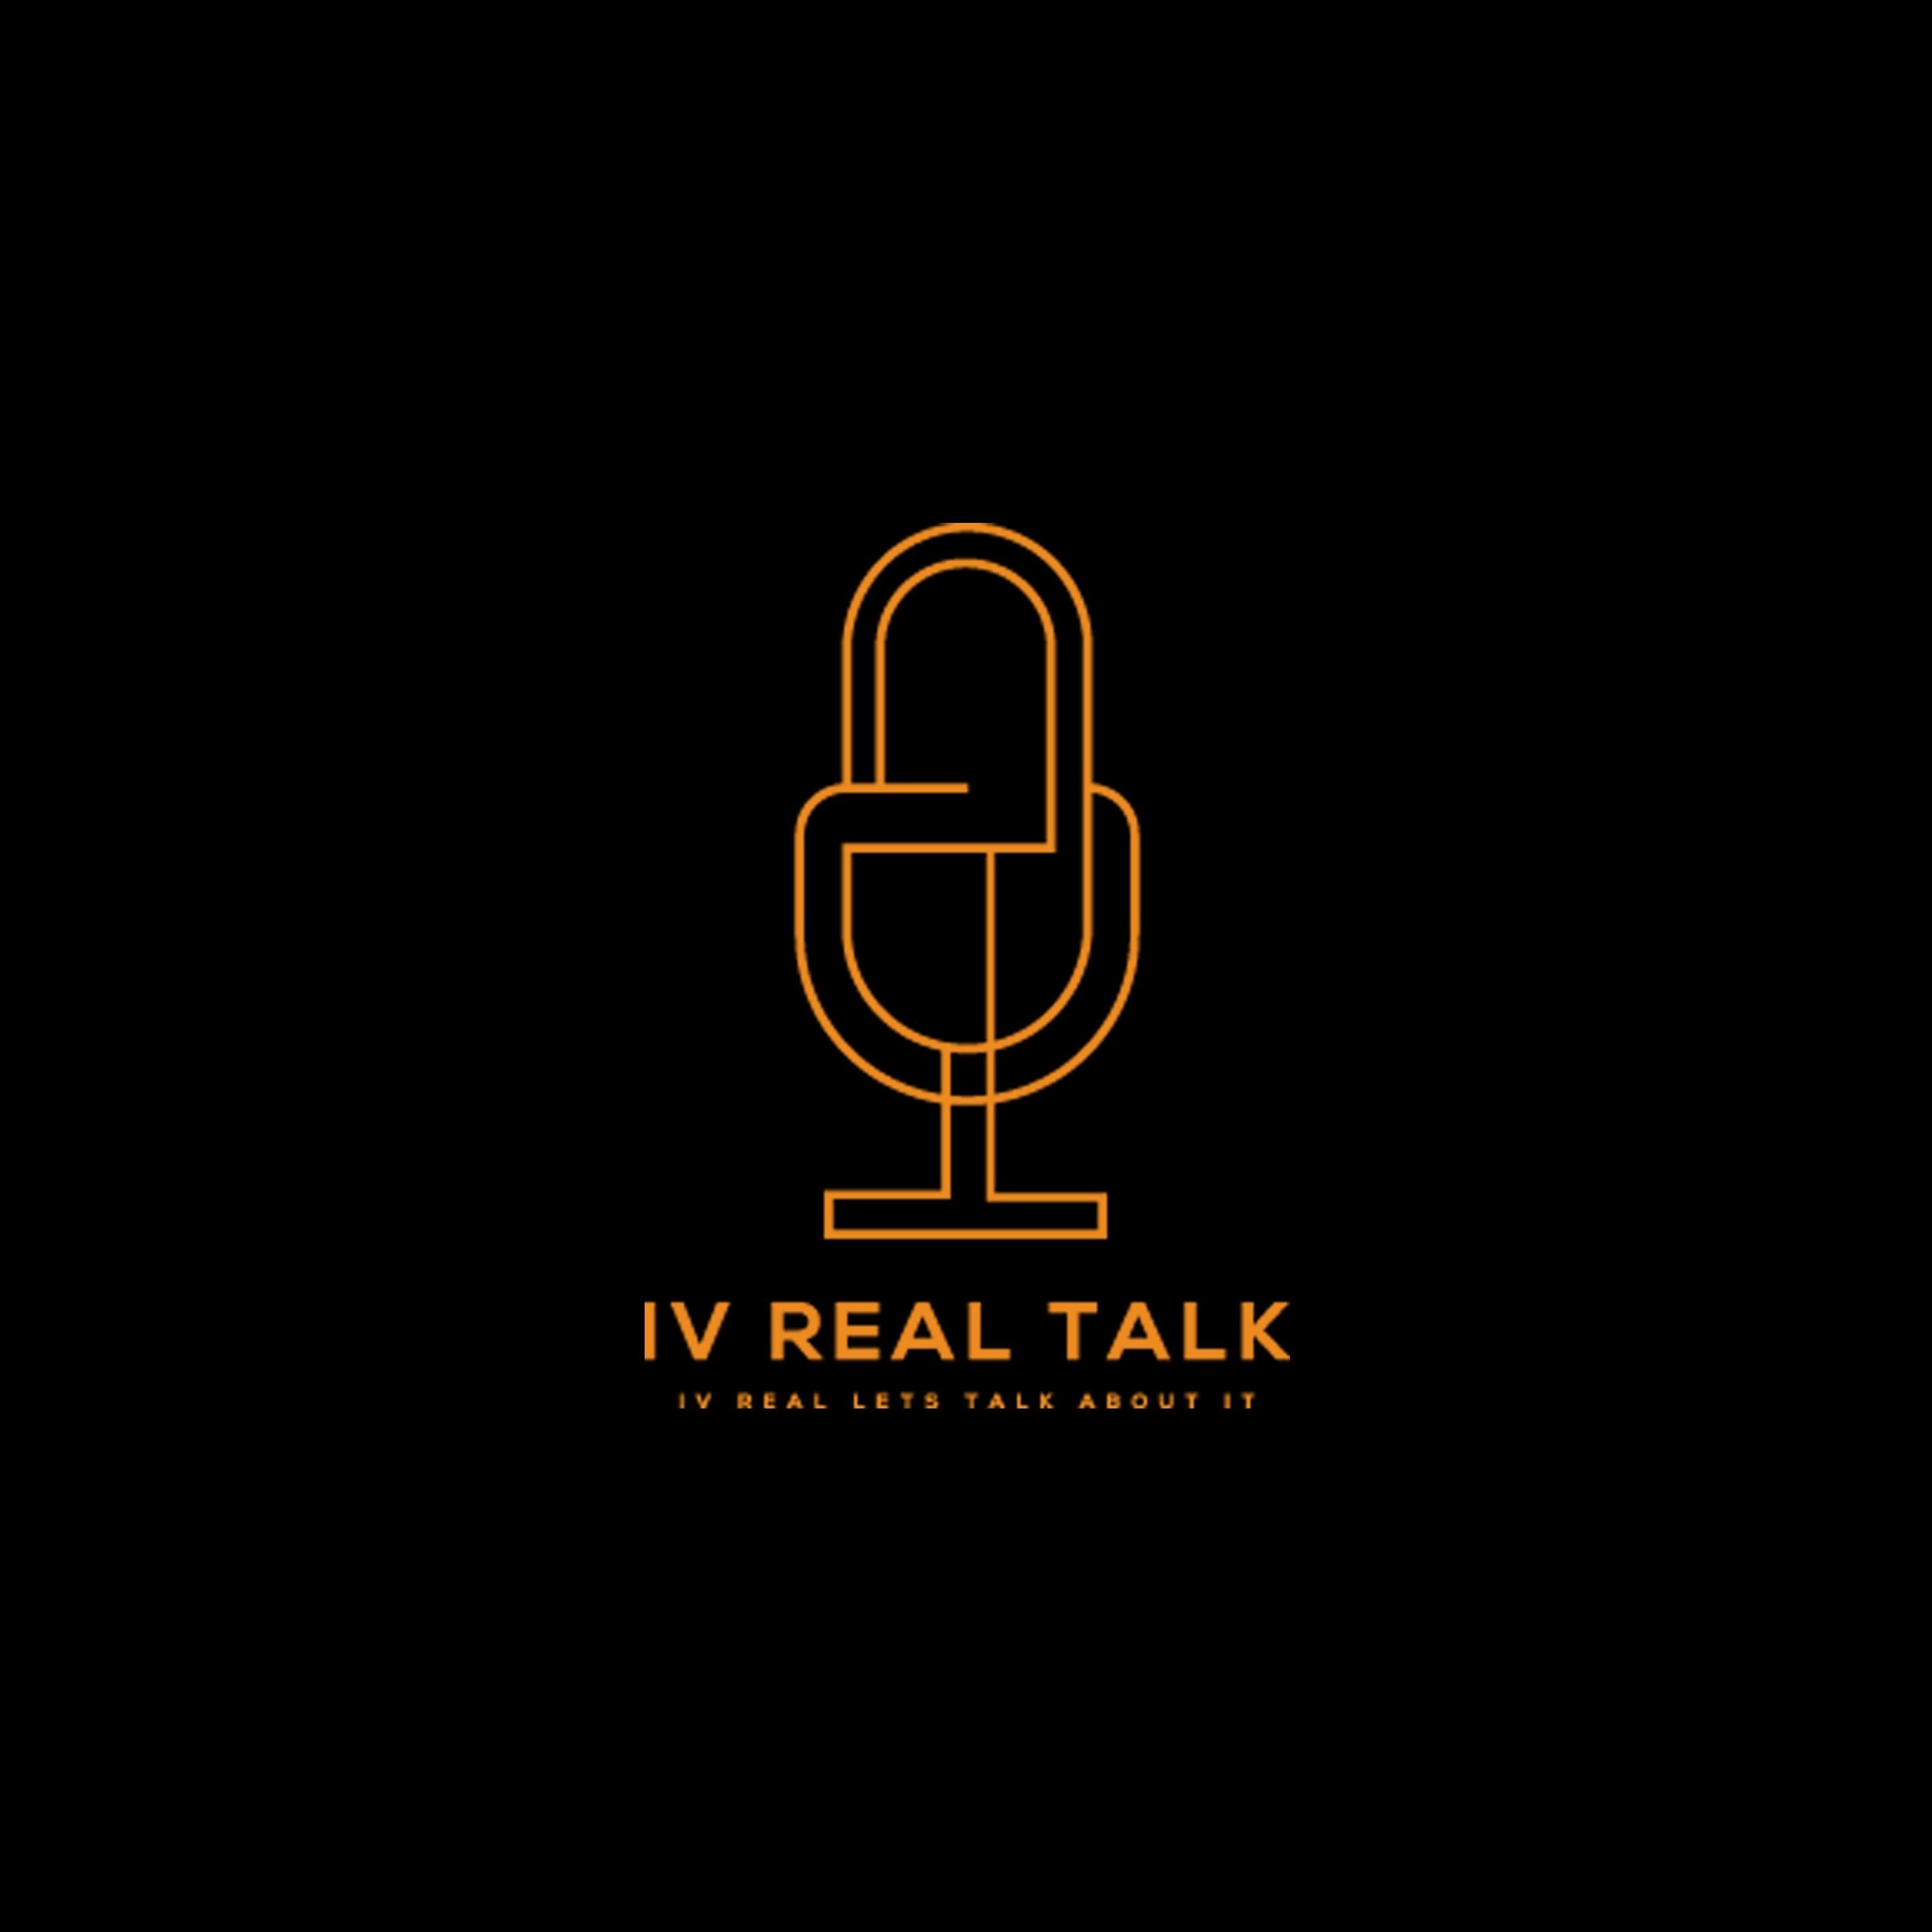 IV Real Talk